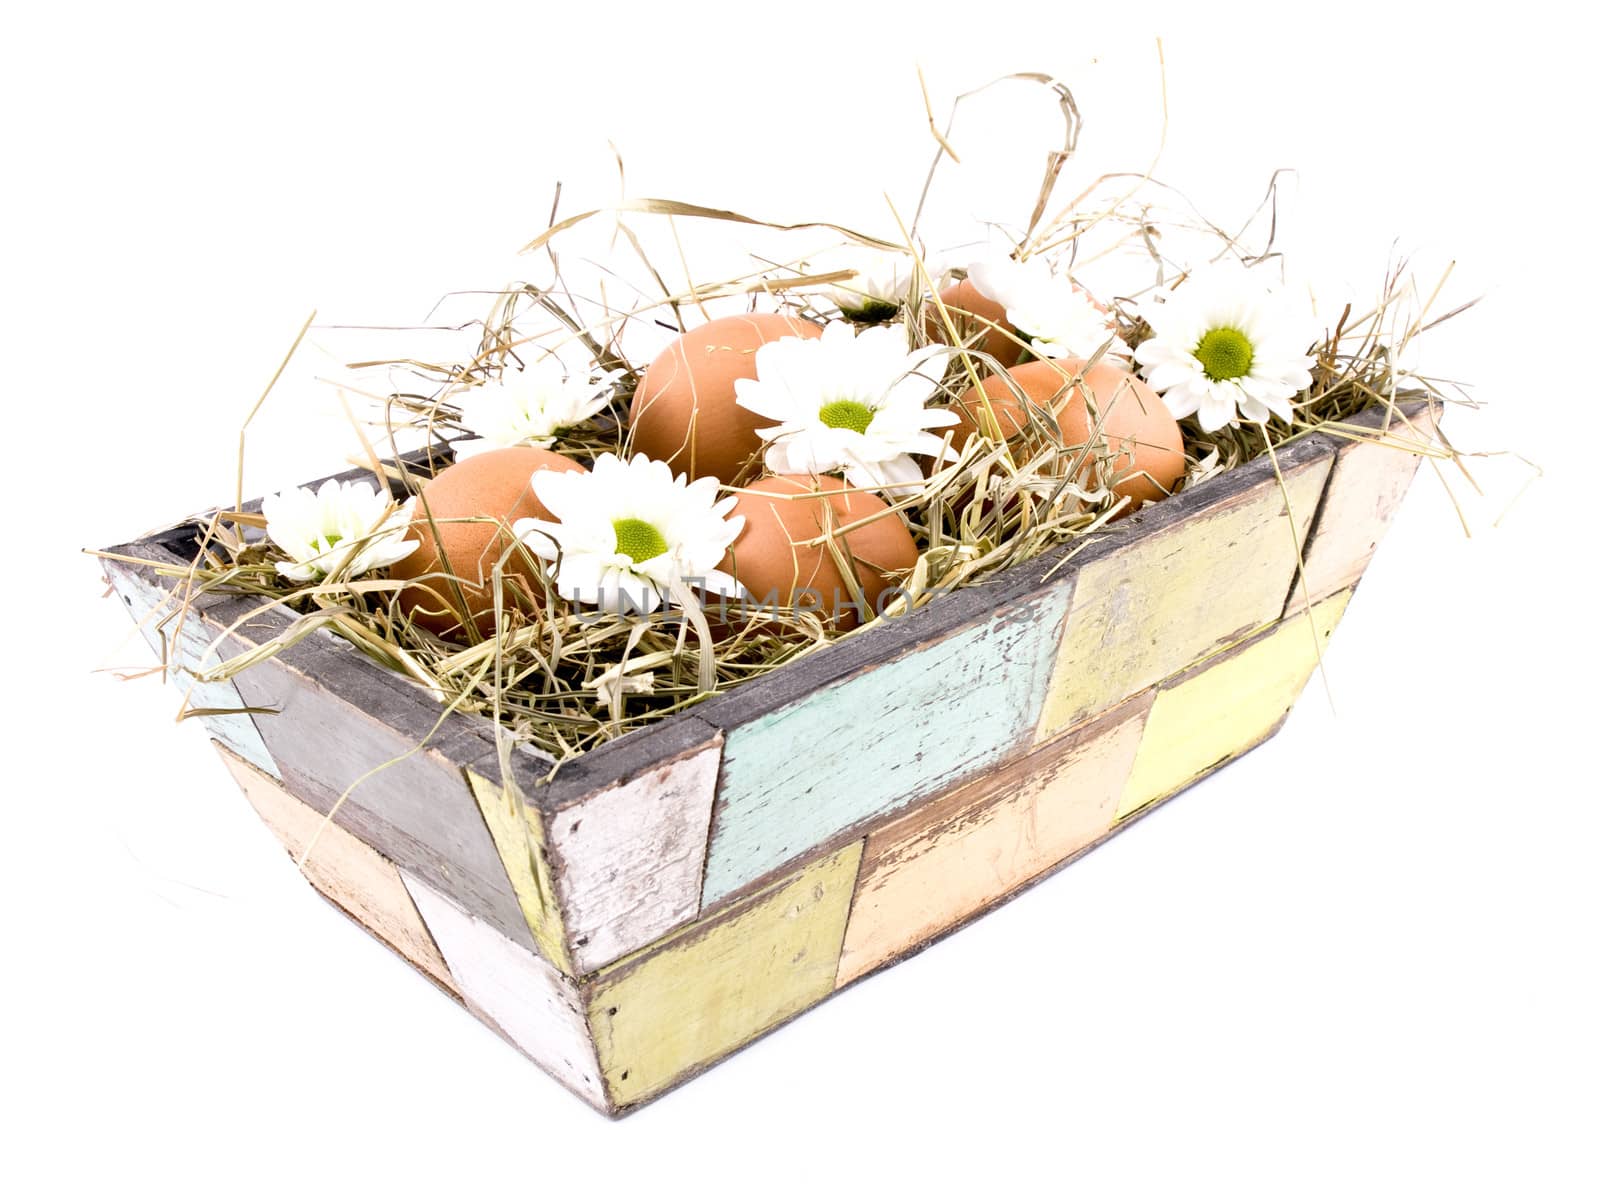 Eggs and oxeye daisy flower in flowerpot by mrsNstudio